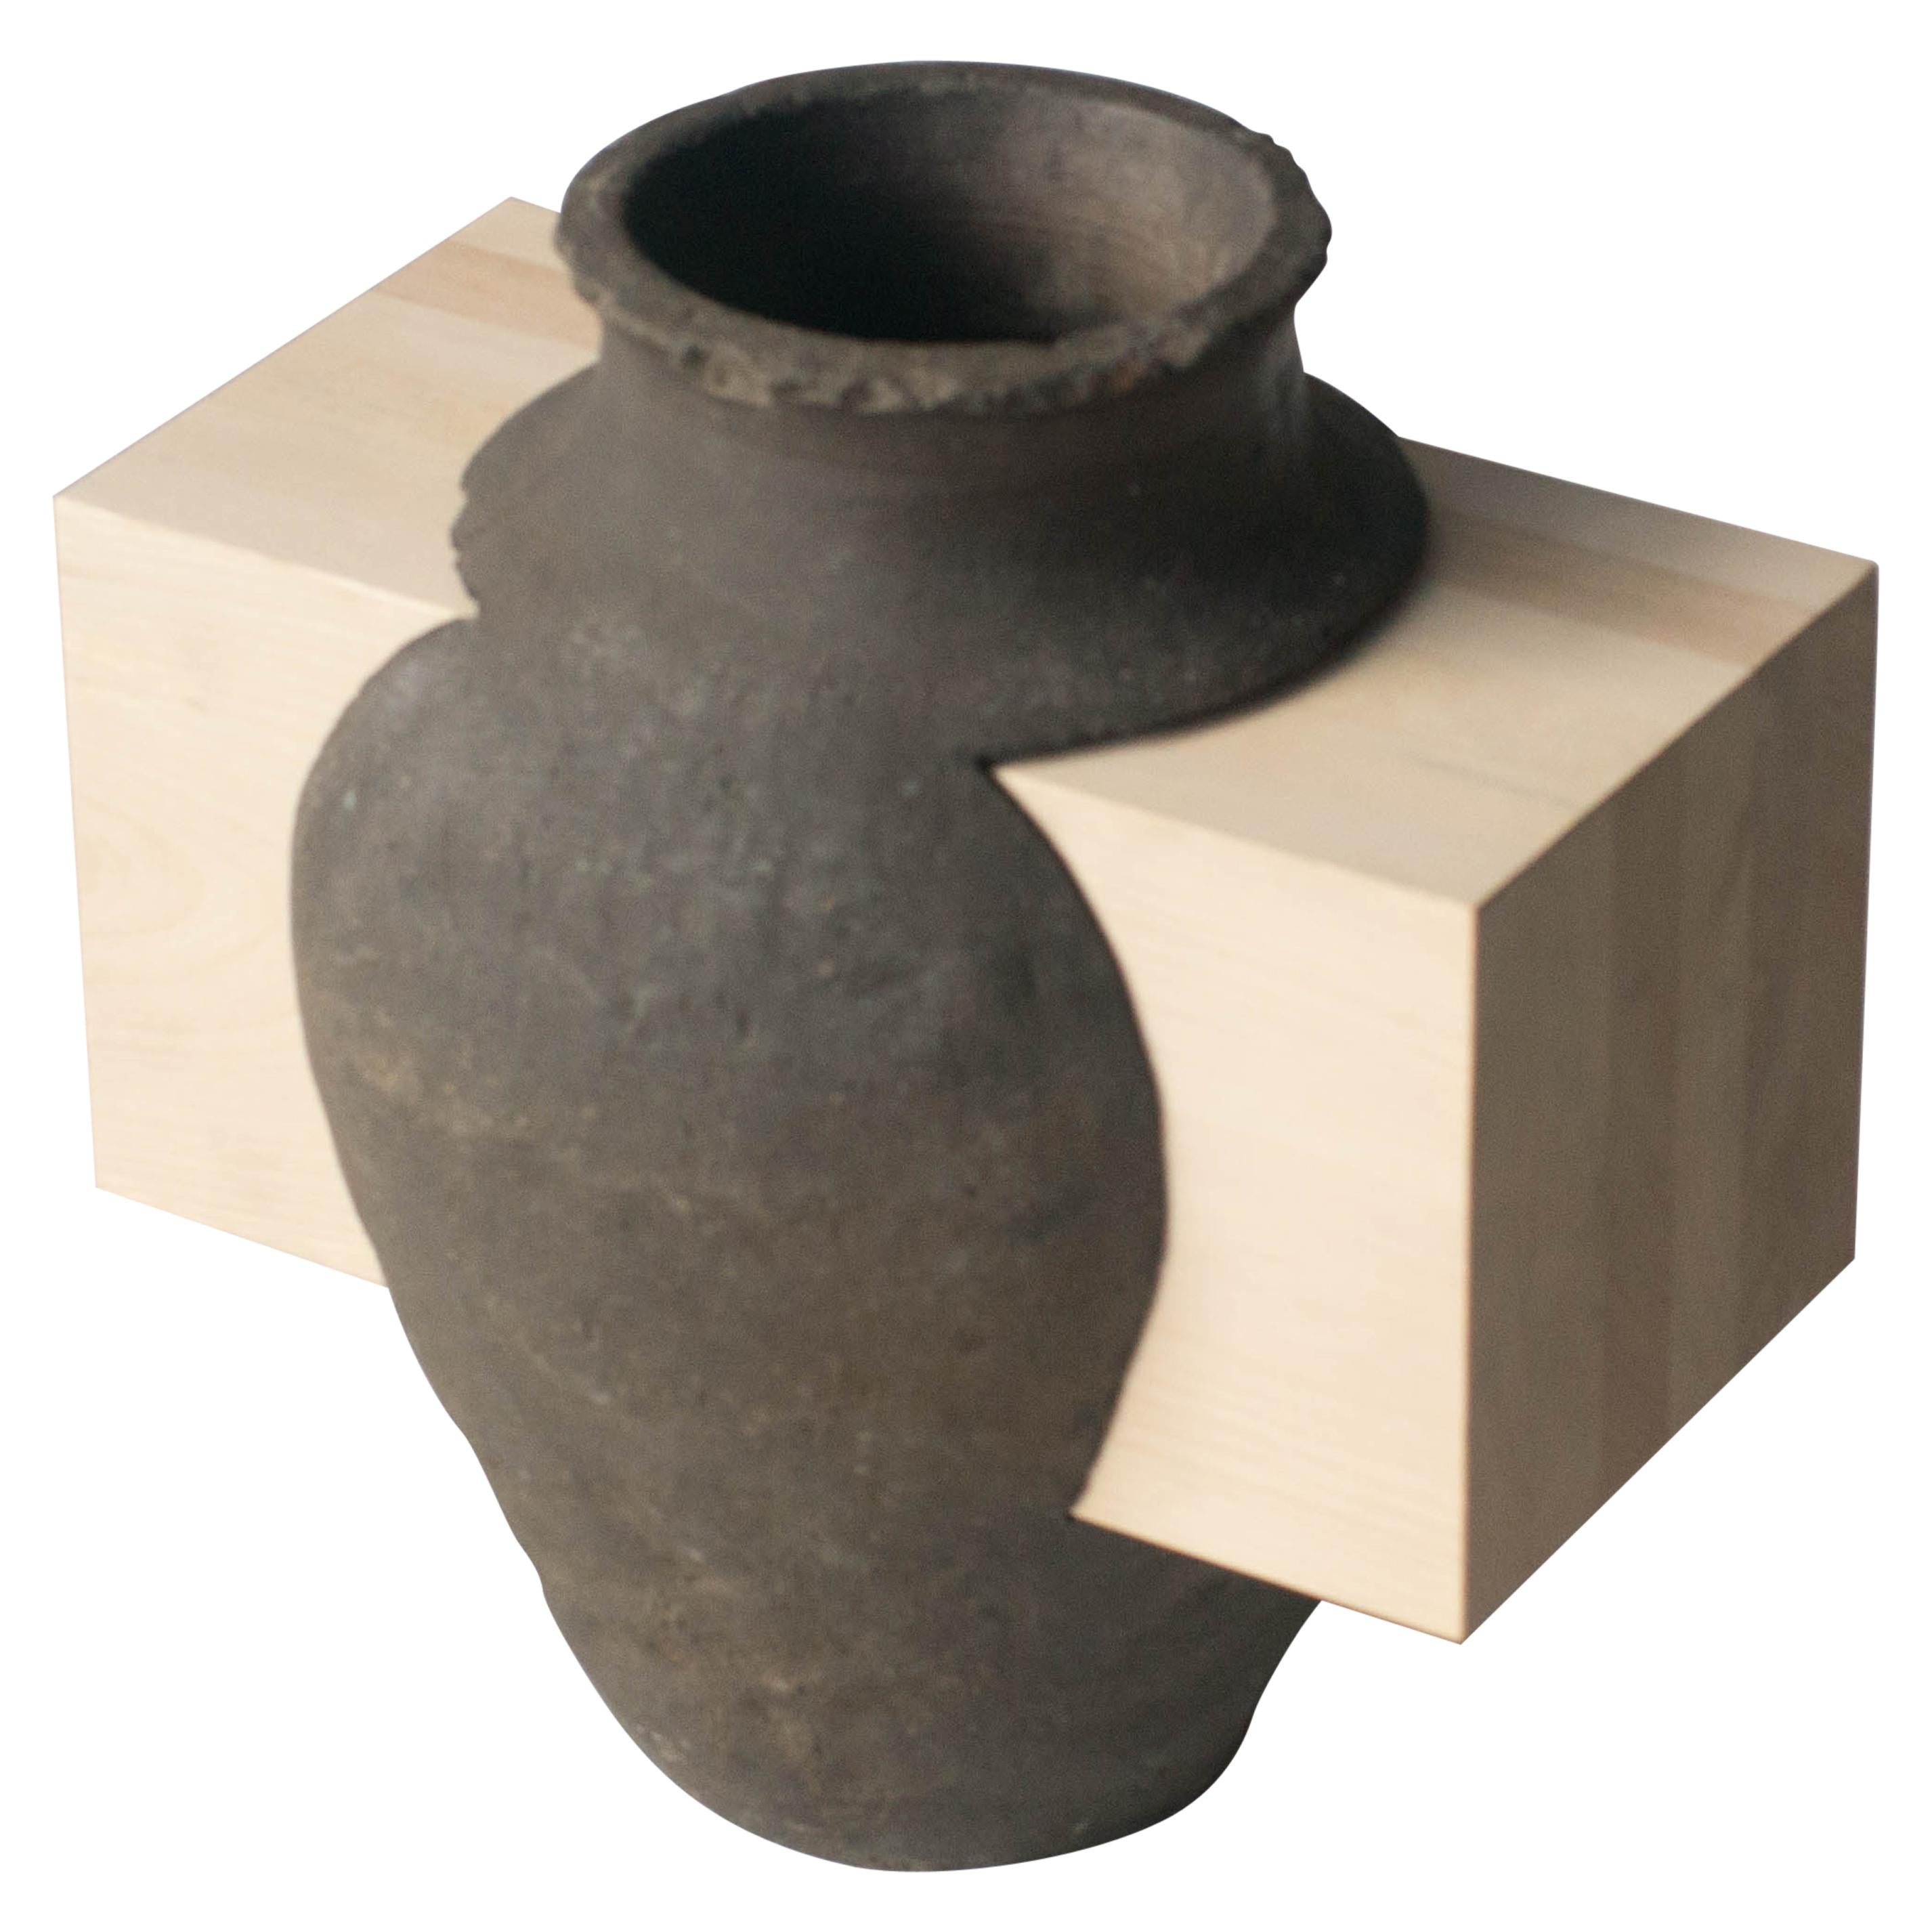 Pot et sculpture abstraite en bois de style japonais zen contemporain